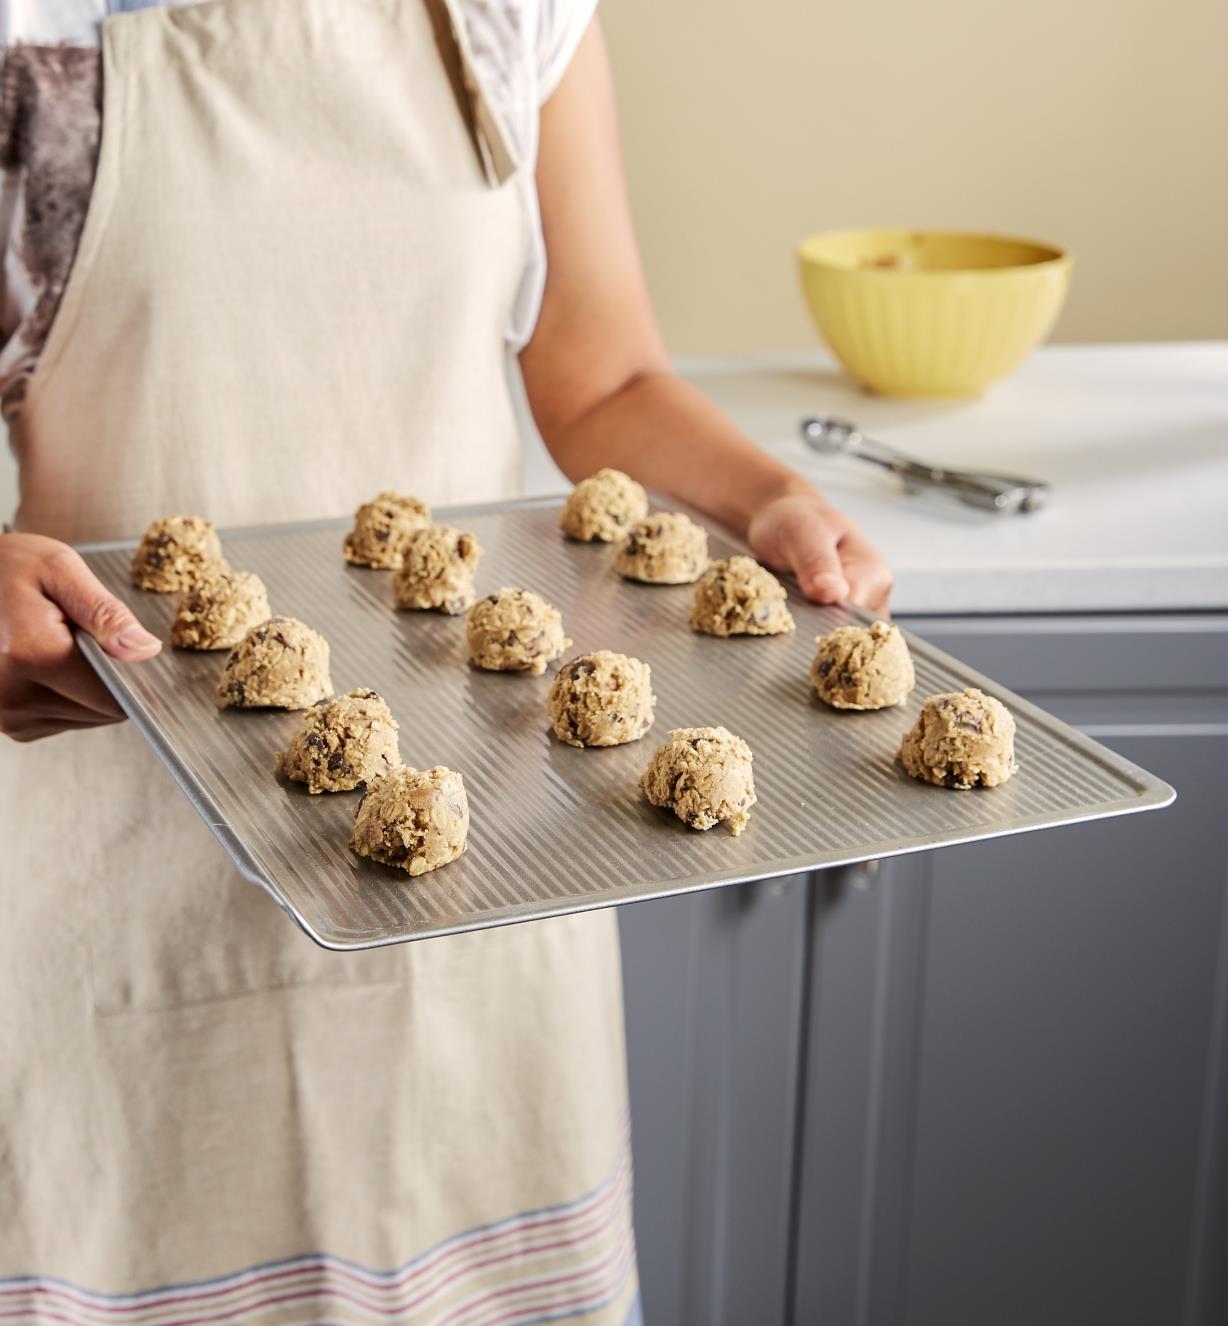 Boules de pâte à biscuits sur une plaque à biscuits avant la cuisson